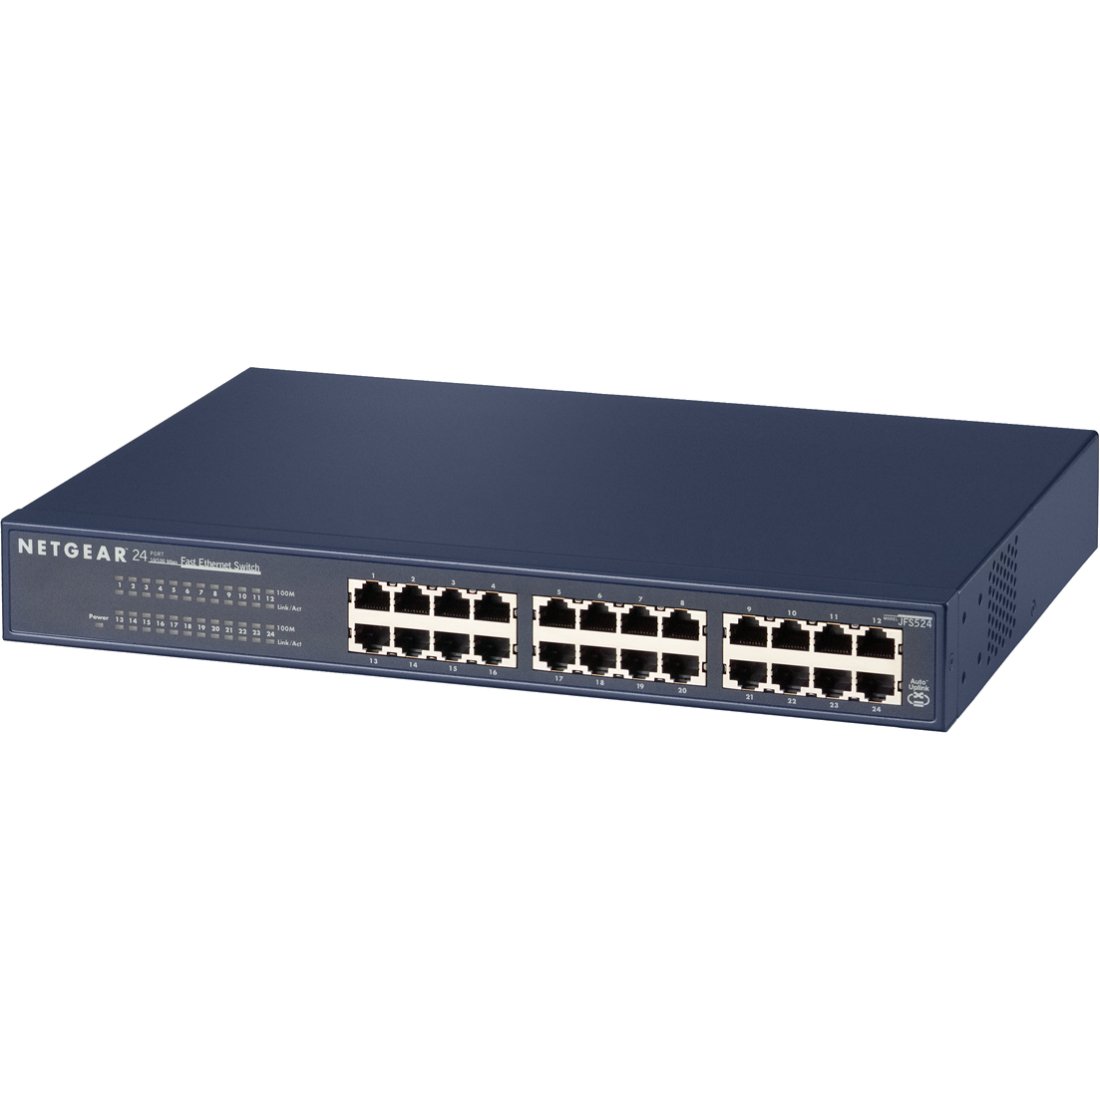 Netgear ProSafe JFS524 24-Port 10/100 Mbps Fast Ethernet Switch